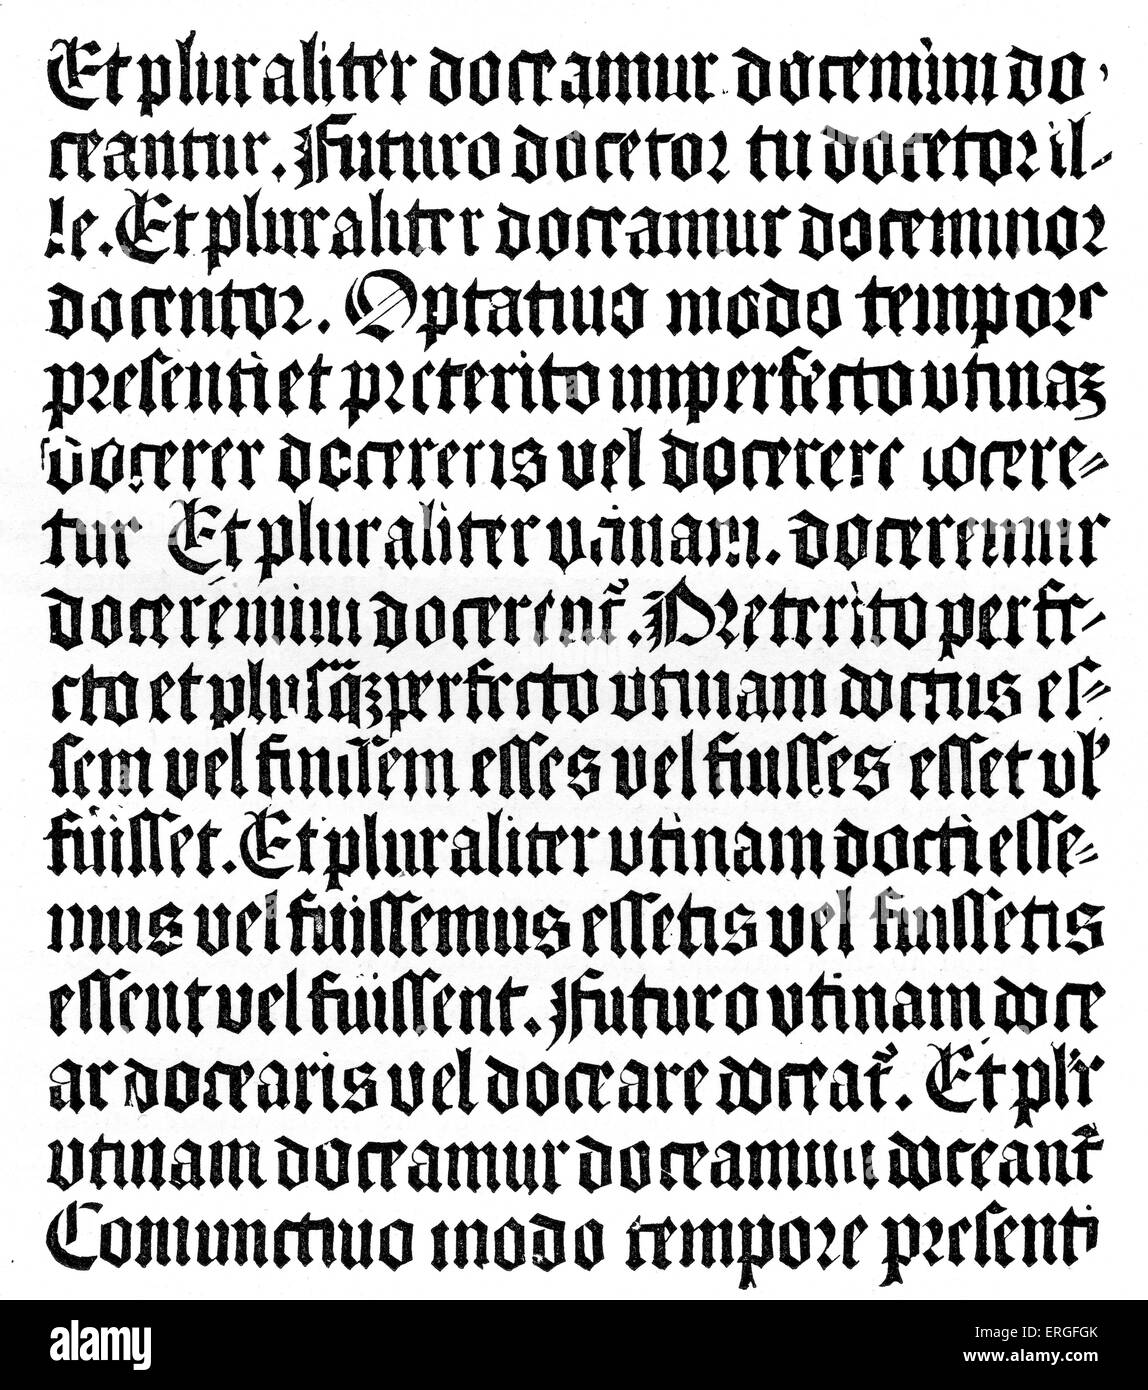 "Grammaire Latine" von Aelius Donatus, 4. Jahrhundert Grammatiker. Reproduktion des Holzstichs der xylographical Ausgabe, veröffentlicht durch Johannes Gutenberg in Mainz. Stockfoto